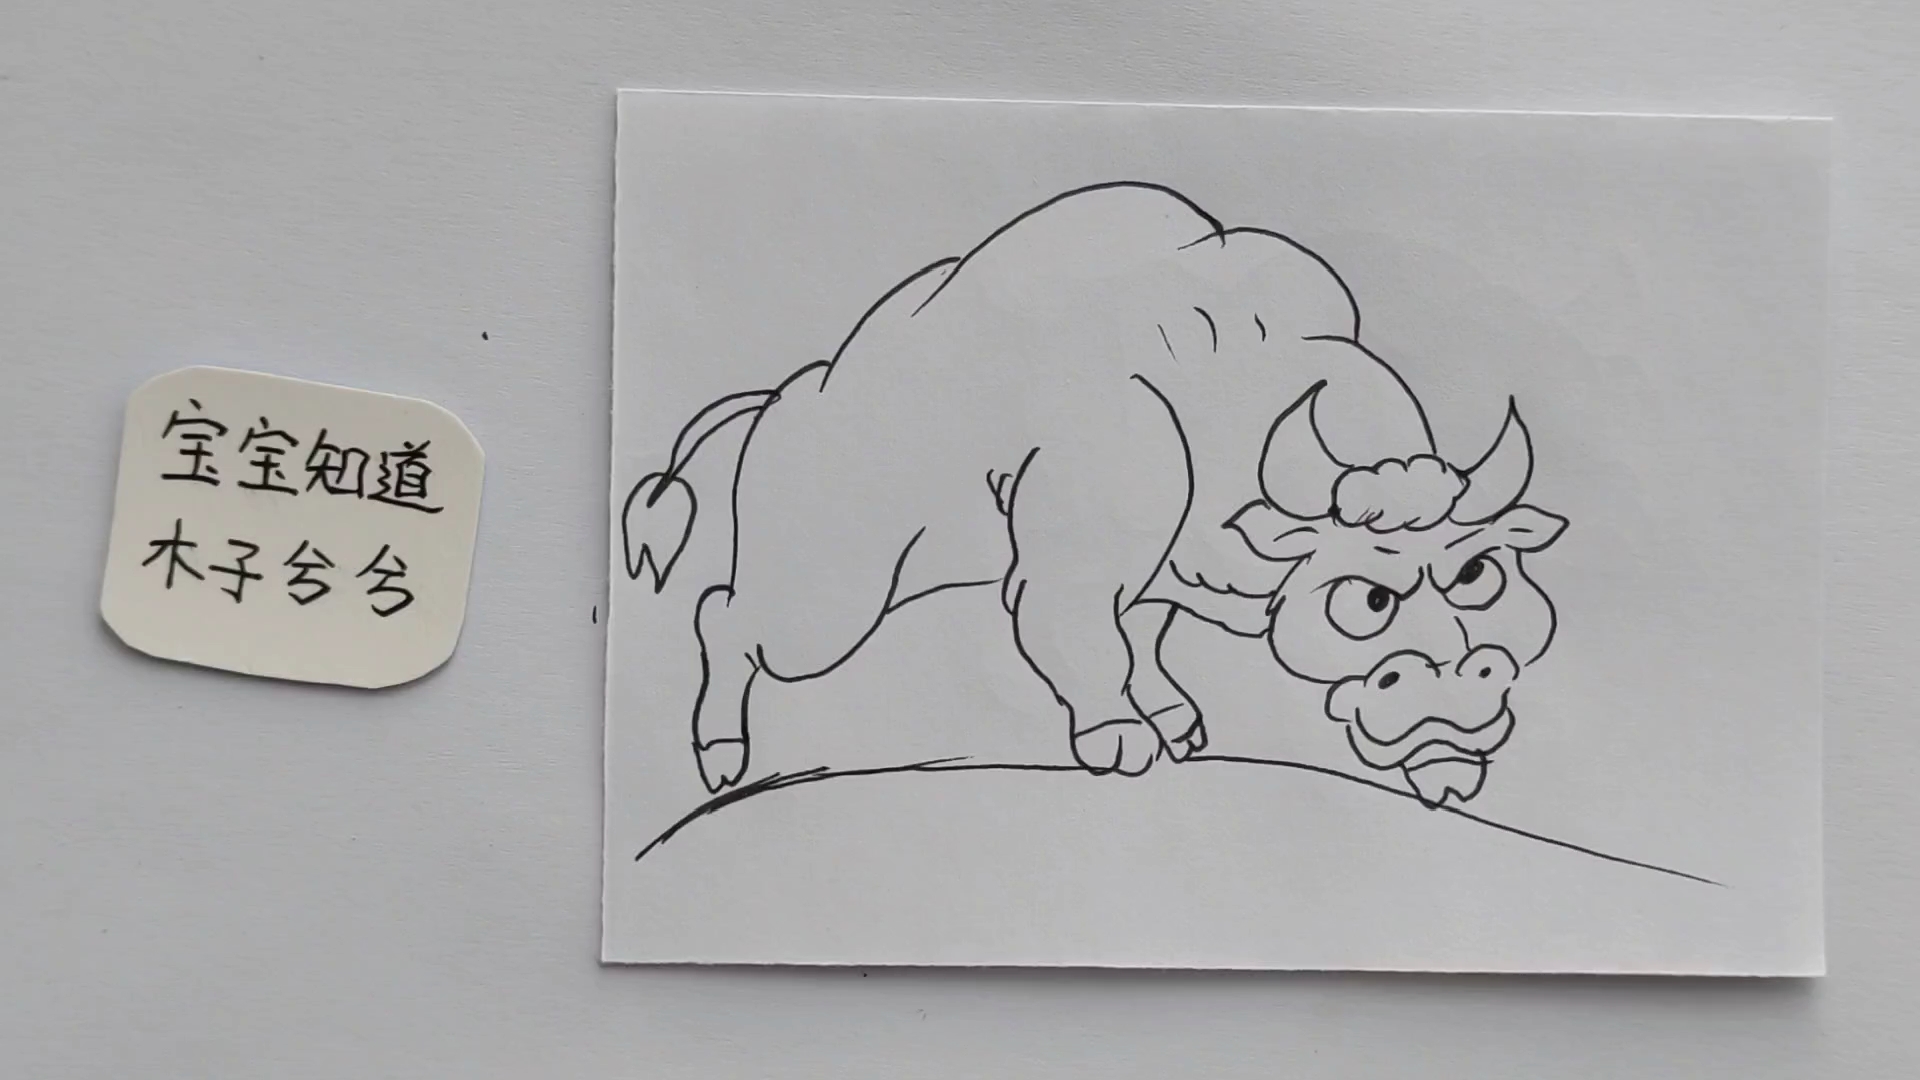 一头愤怒的牛简笔画图片